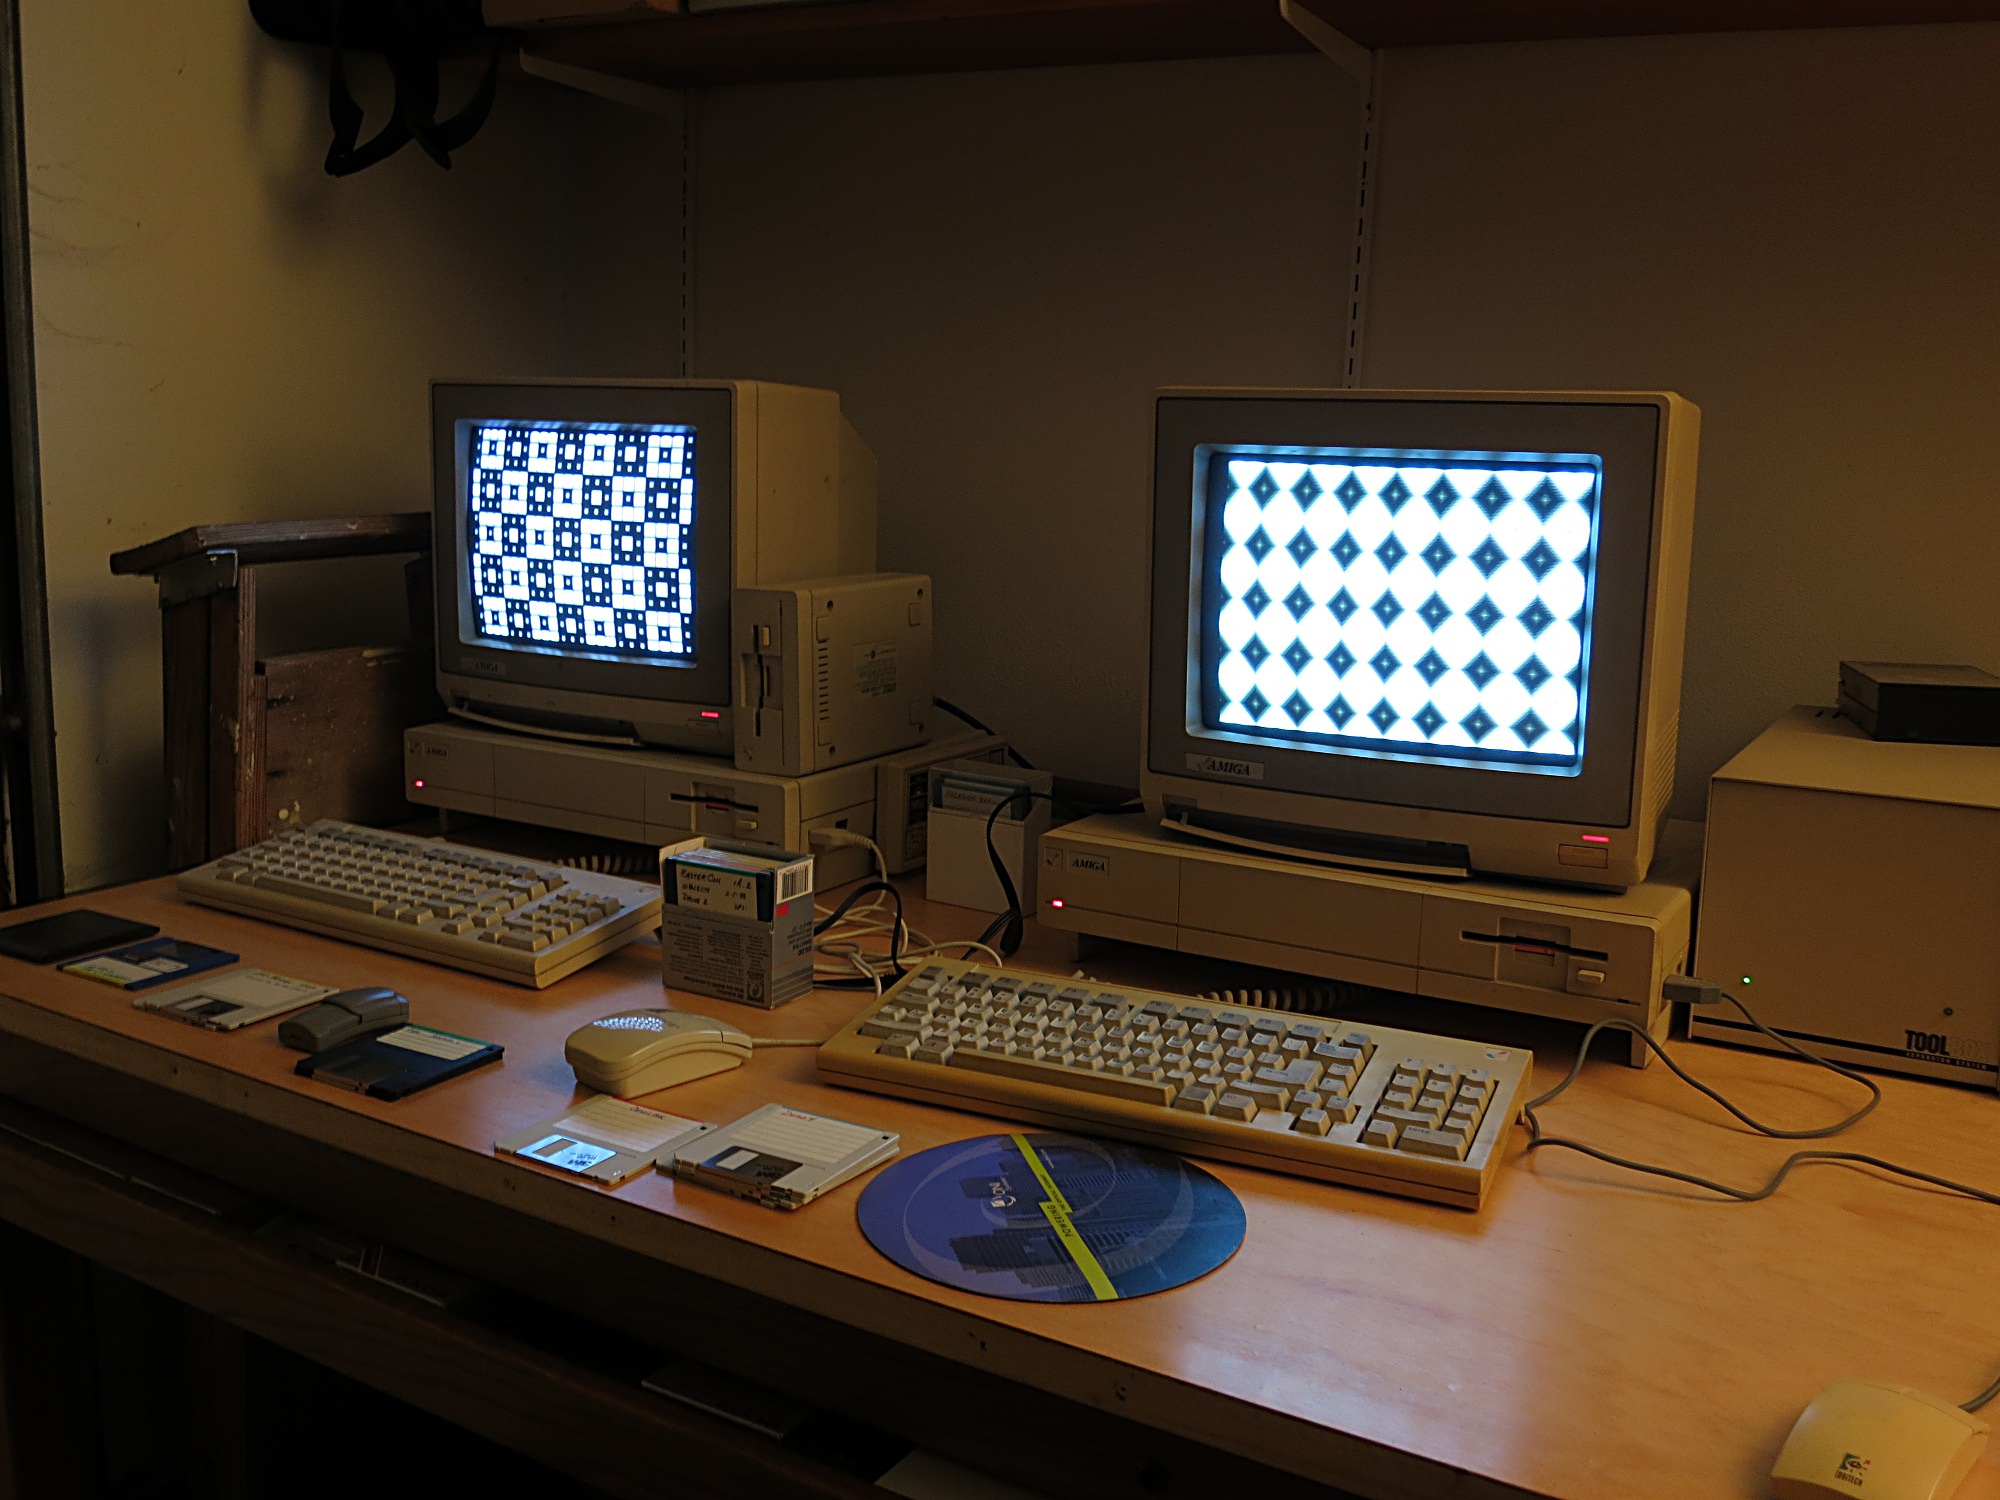 Commodore Amiga 1000s resurrected in Dave's garage